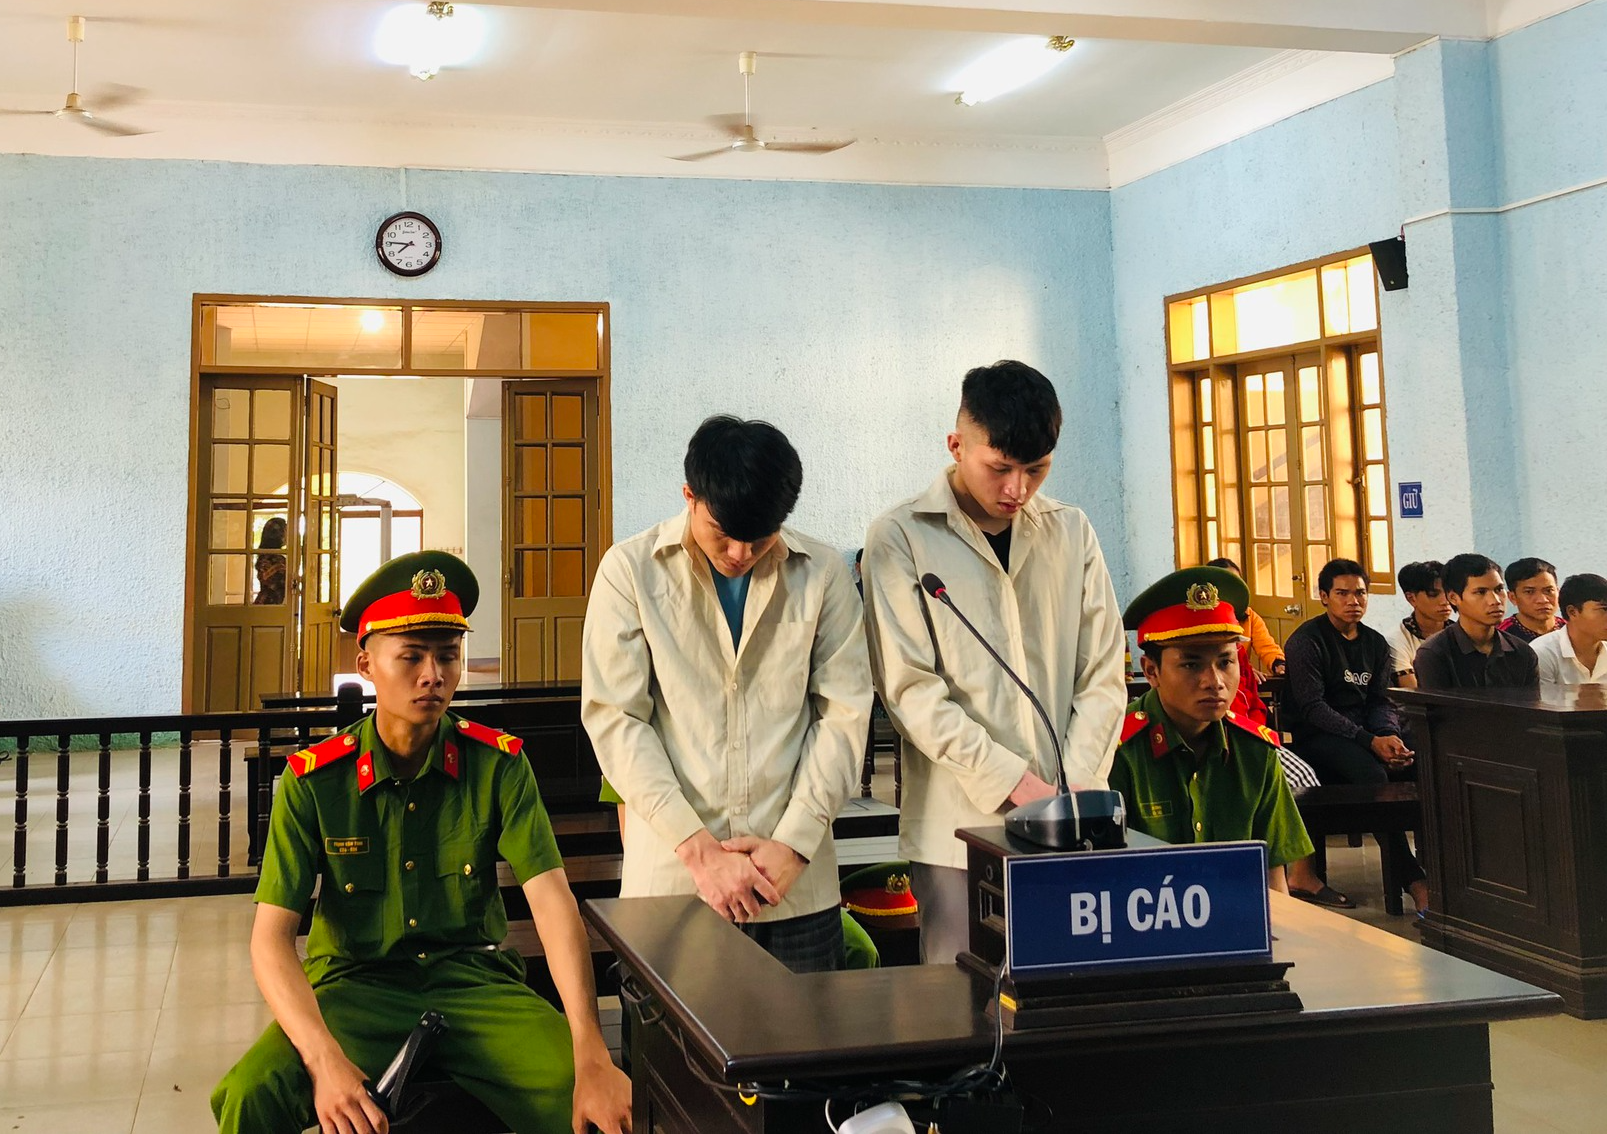 Lừa đưa 7 người sang Campuchia bán, hai thanh niên lĩnh án gần 30 năm tù - Ảnh 1.